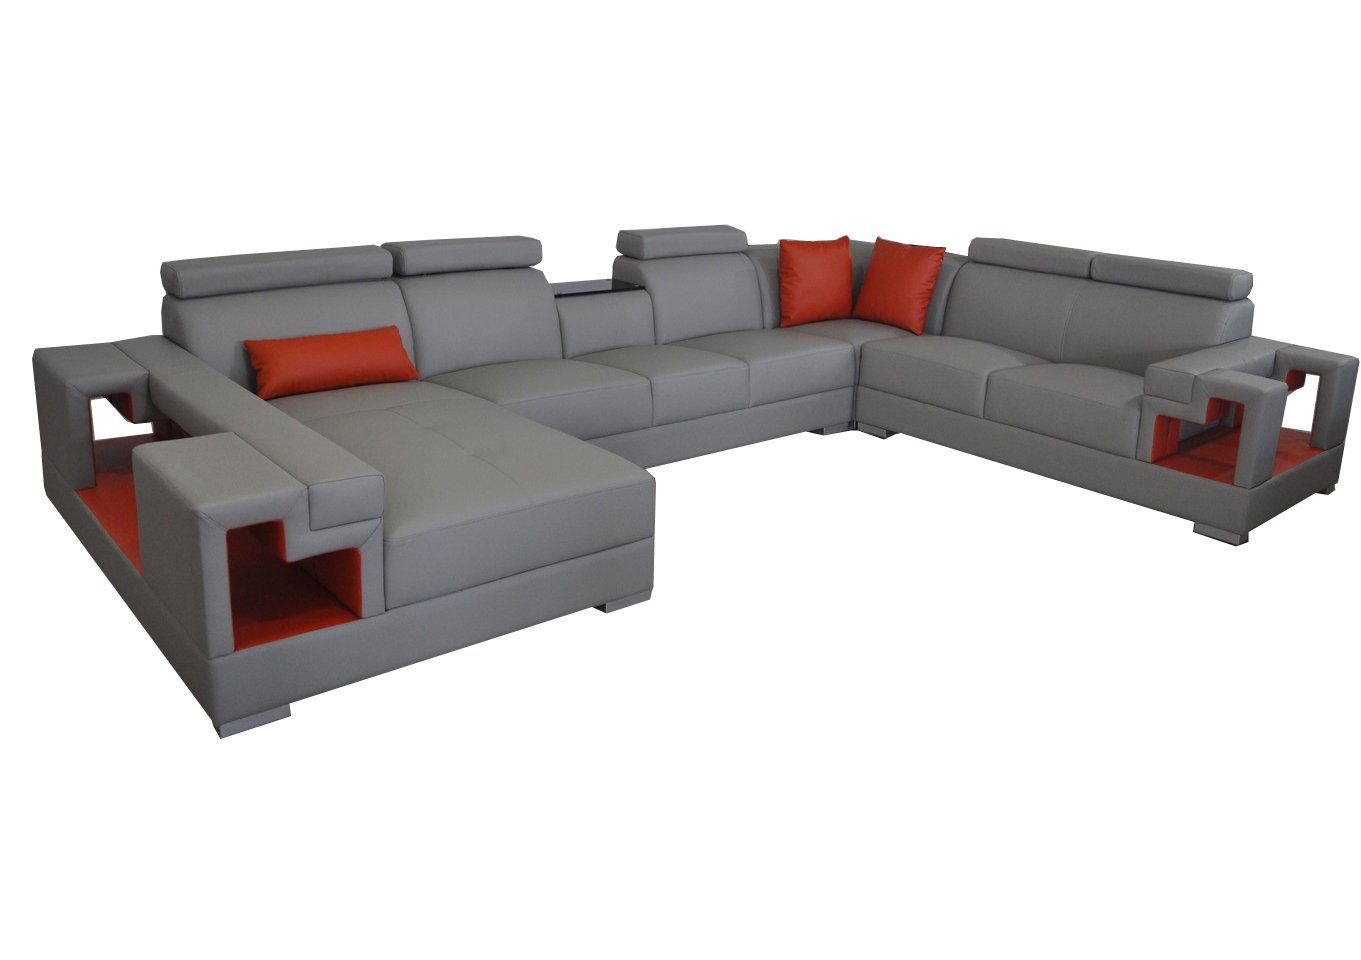 JVmoebel Ecksofa »Ledersofa Eck Sofa Couch Wohnlandschaft Sofas Couchen  Garnitur Design Modern Neu« online kaufen | OTTO